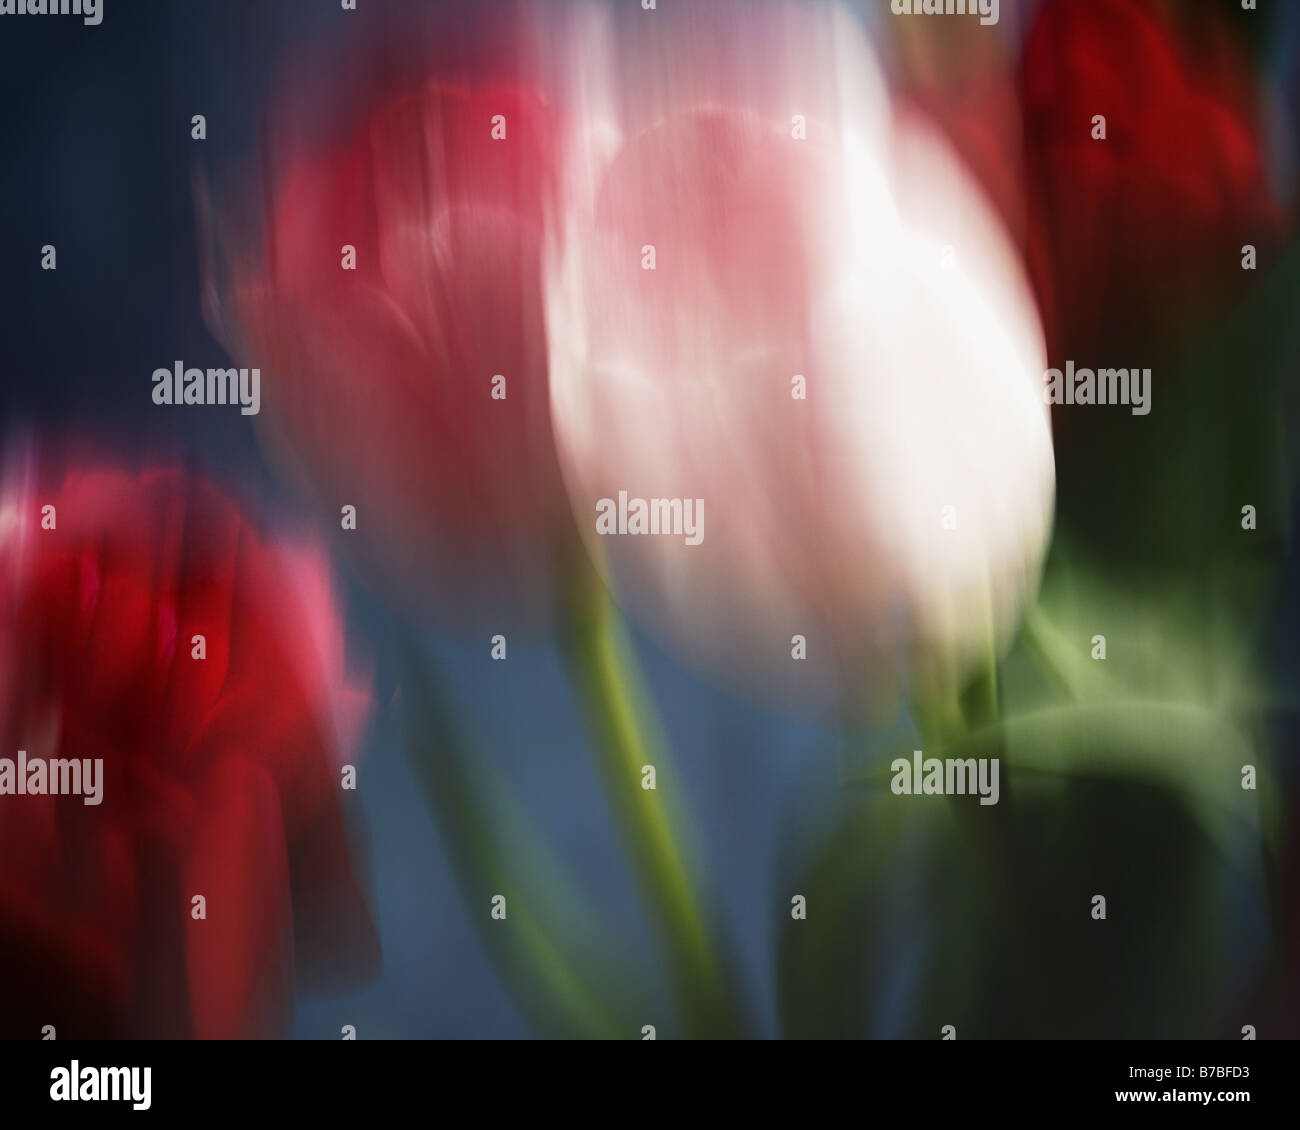 Arte: Tulip disposizione (Photo Art) Foto Stock